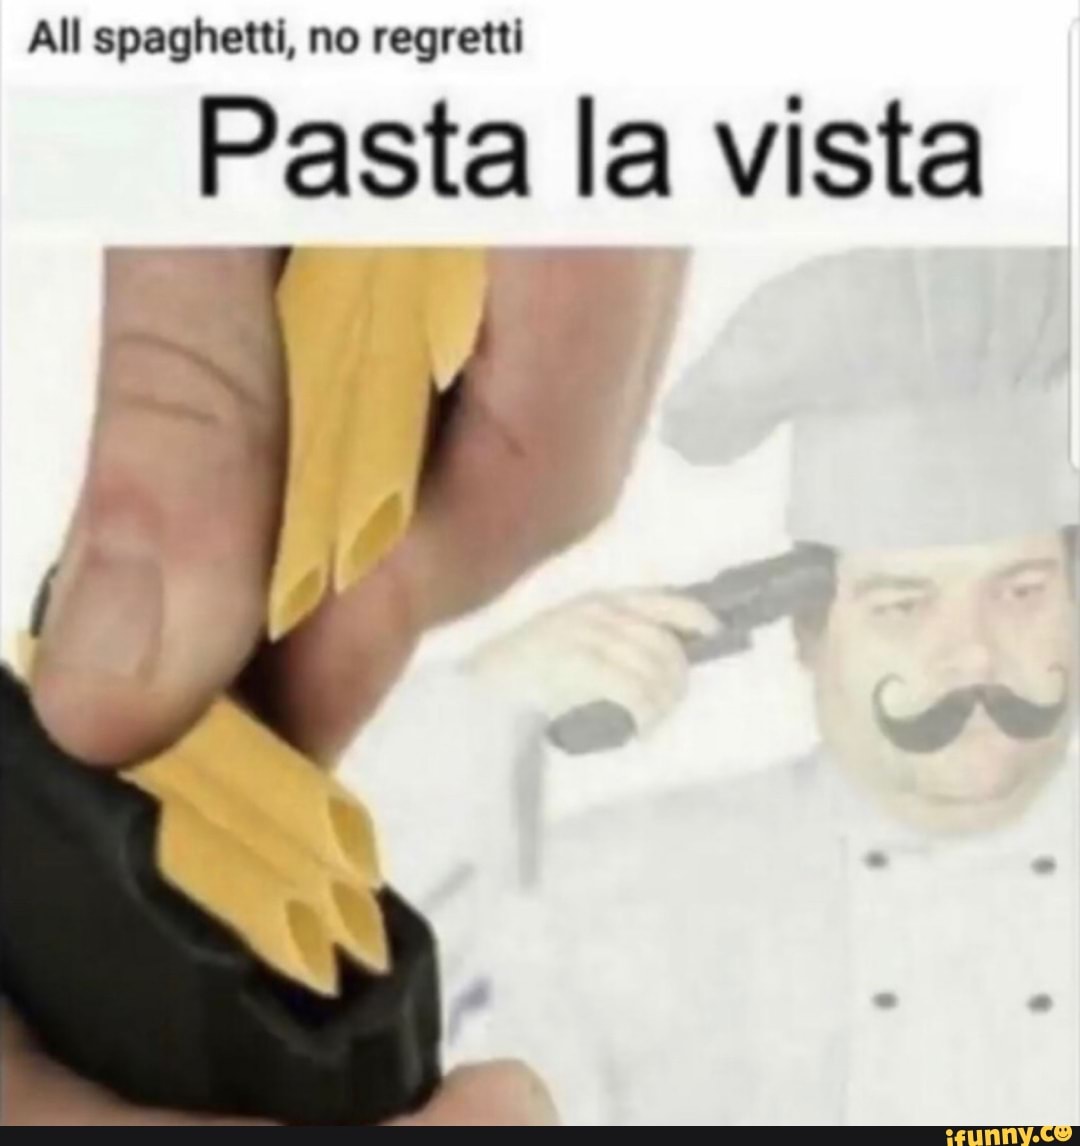 All spaghetti, no regretti Pasta la vista - iFunny